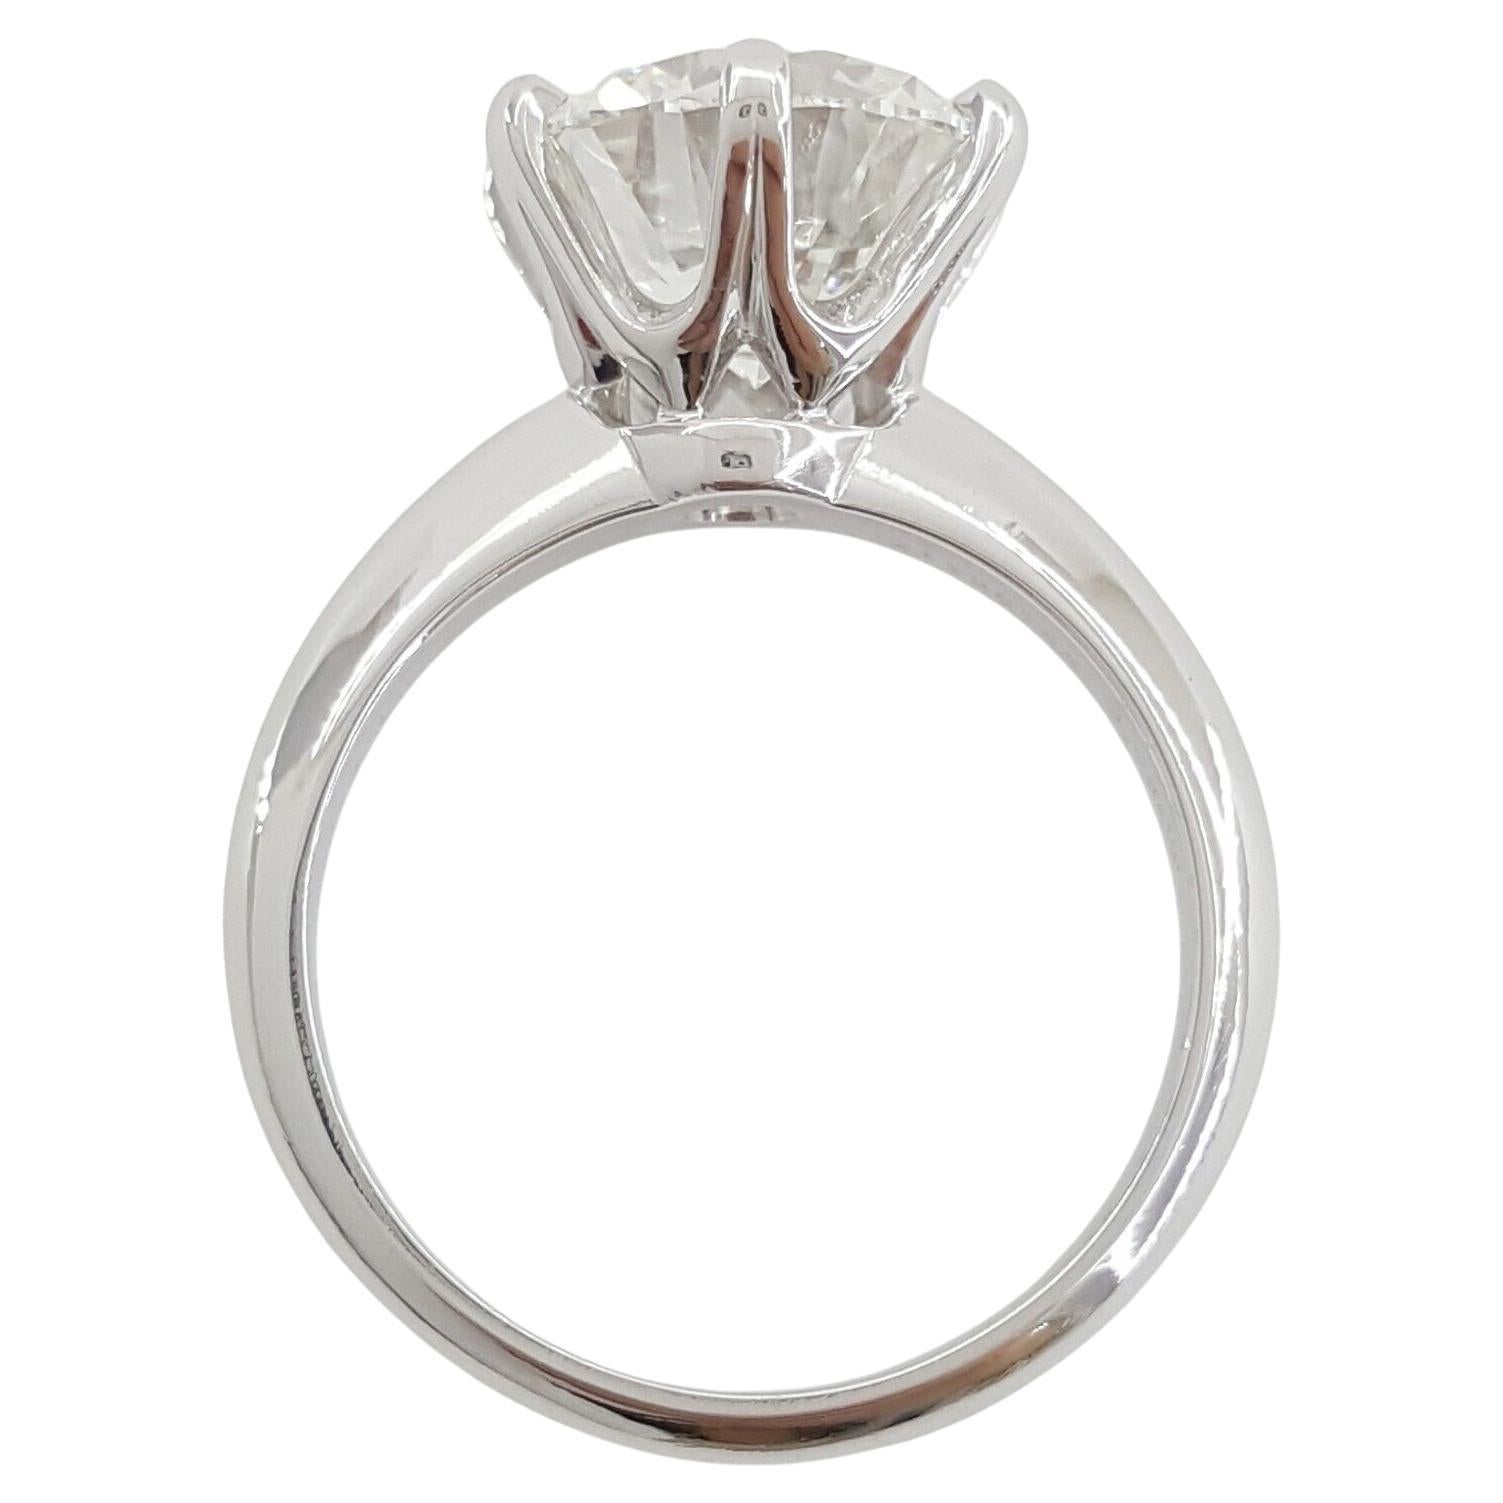 Dieser exquisite Verlobungsring von Tiffany & Co. ist ein Paragon klassischer Eleganz und wurde sorgfältig aus Platin gefertigt. Der Ring mit einem Gewicht von 6,6 Gramm und einer Größe von 5,75 bietet eine ausgewogene und bequeme Passform und kann